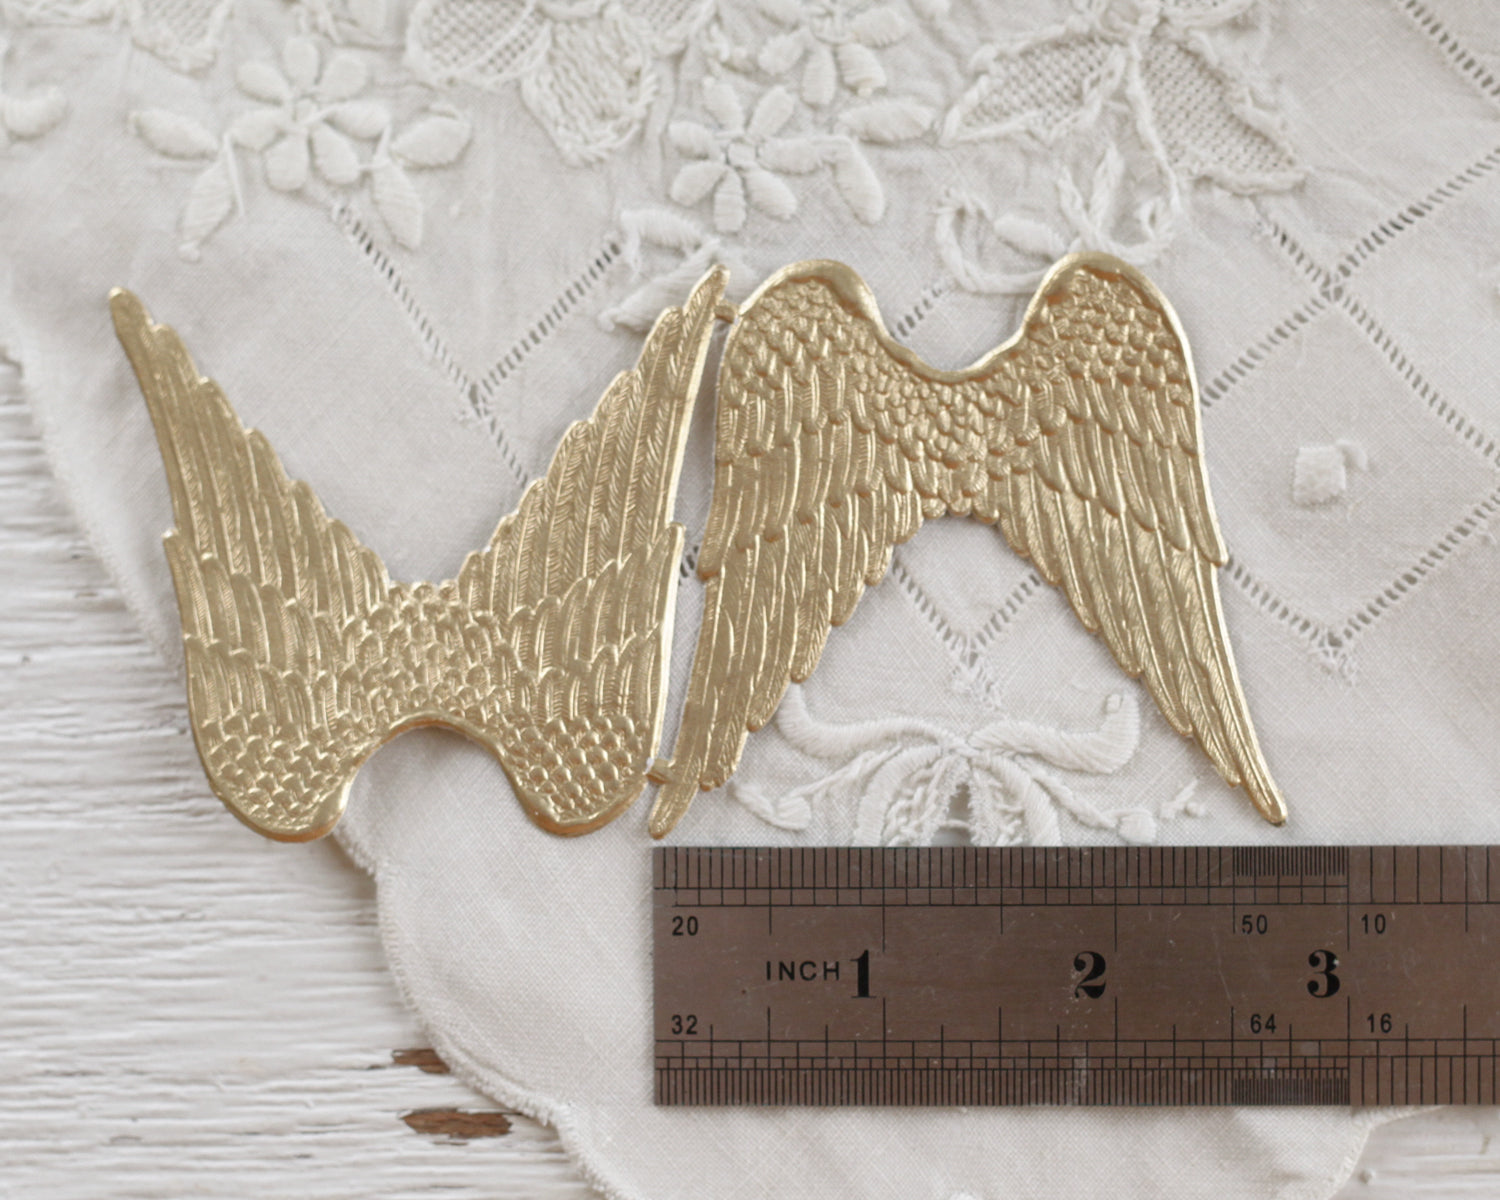 Paper Angel Wings - Embossed Gold Foil Die Cut Dresden Paper Wings, 4 –  Smile Mercantile Craft Co.